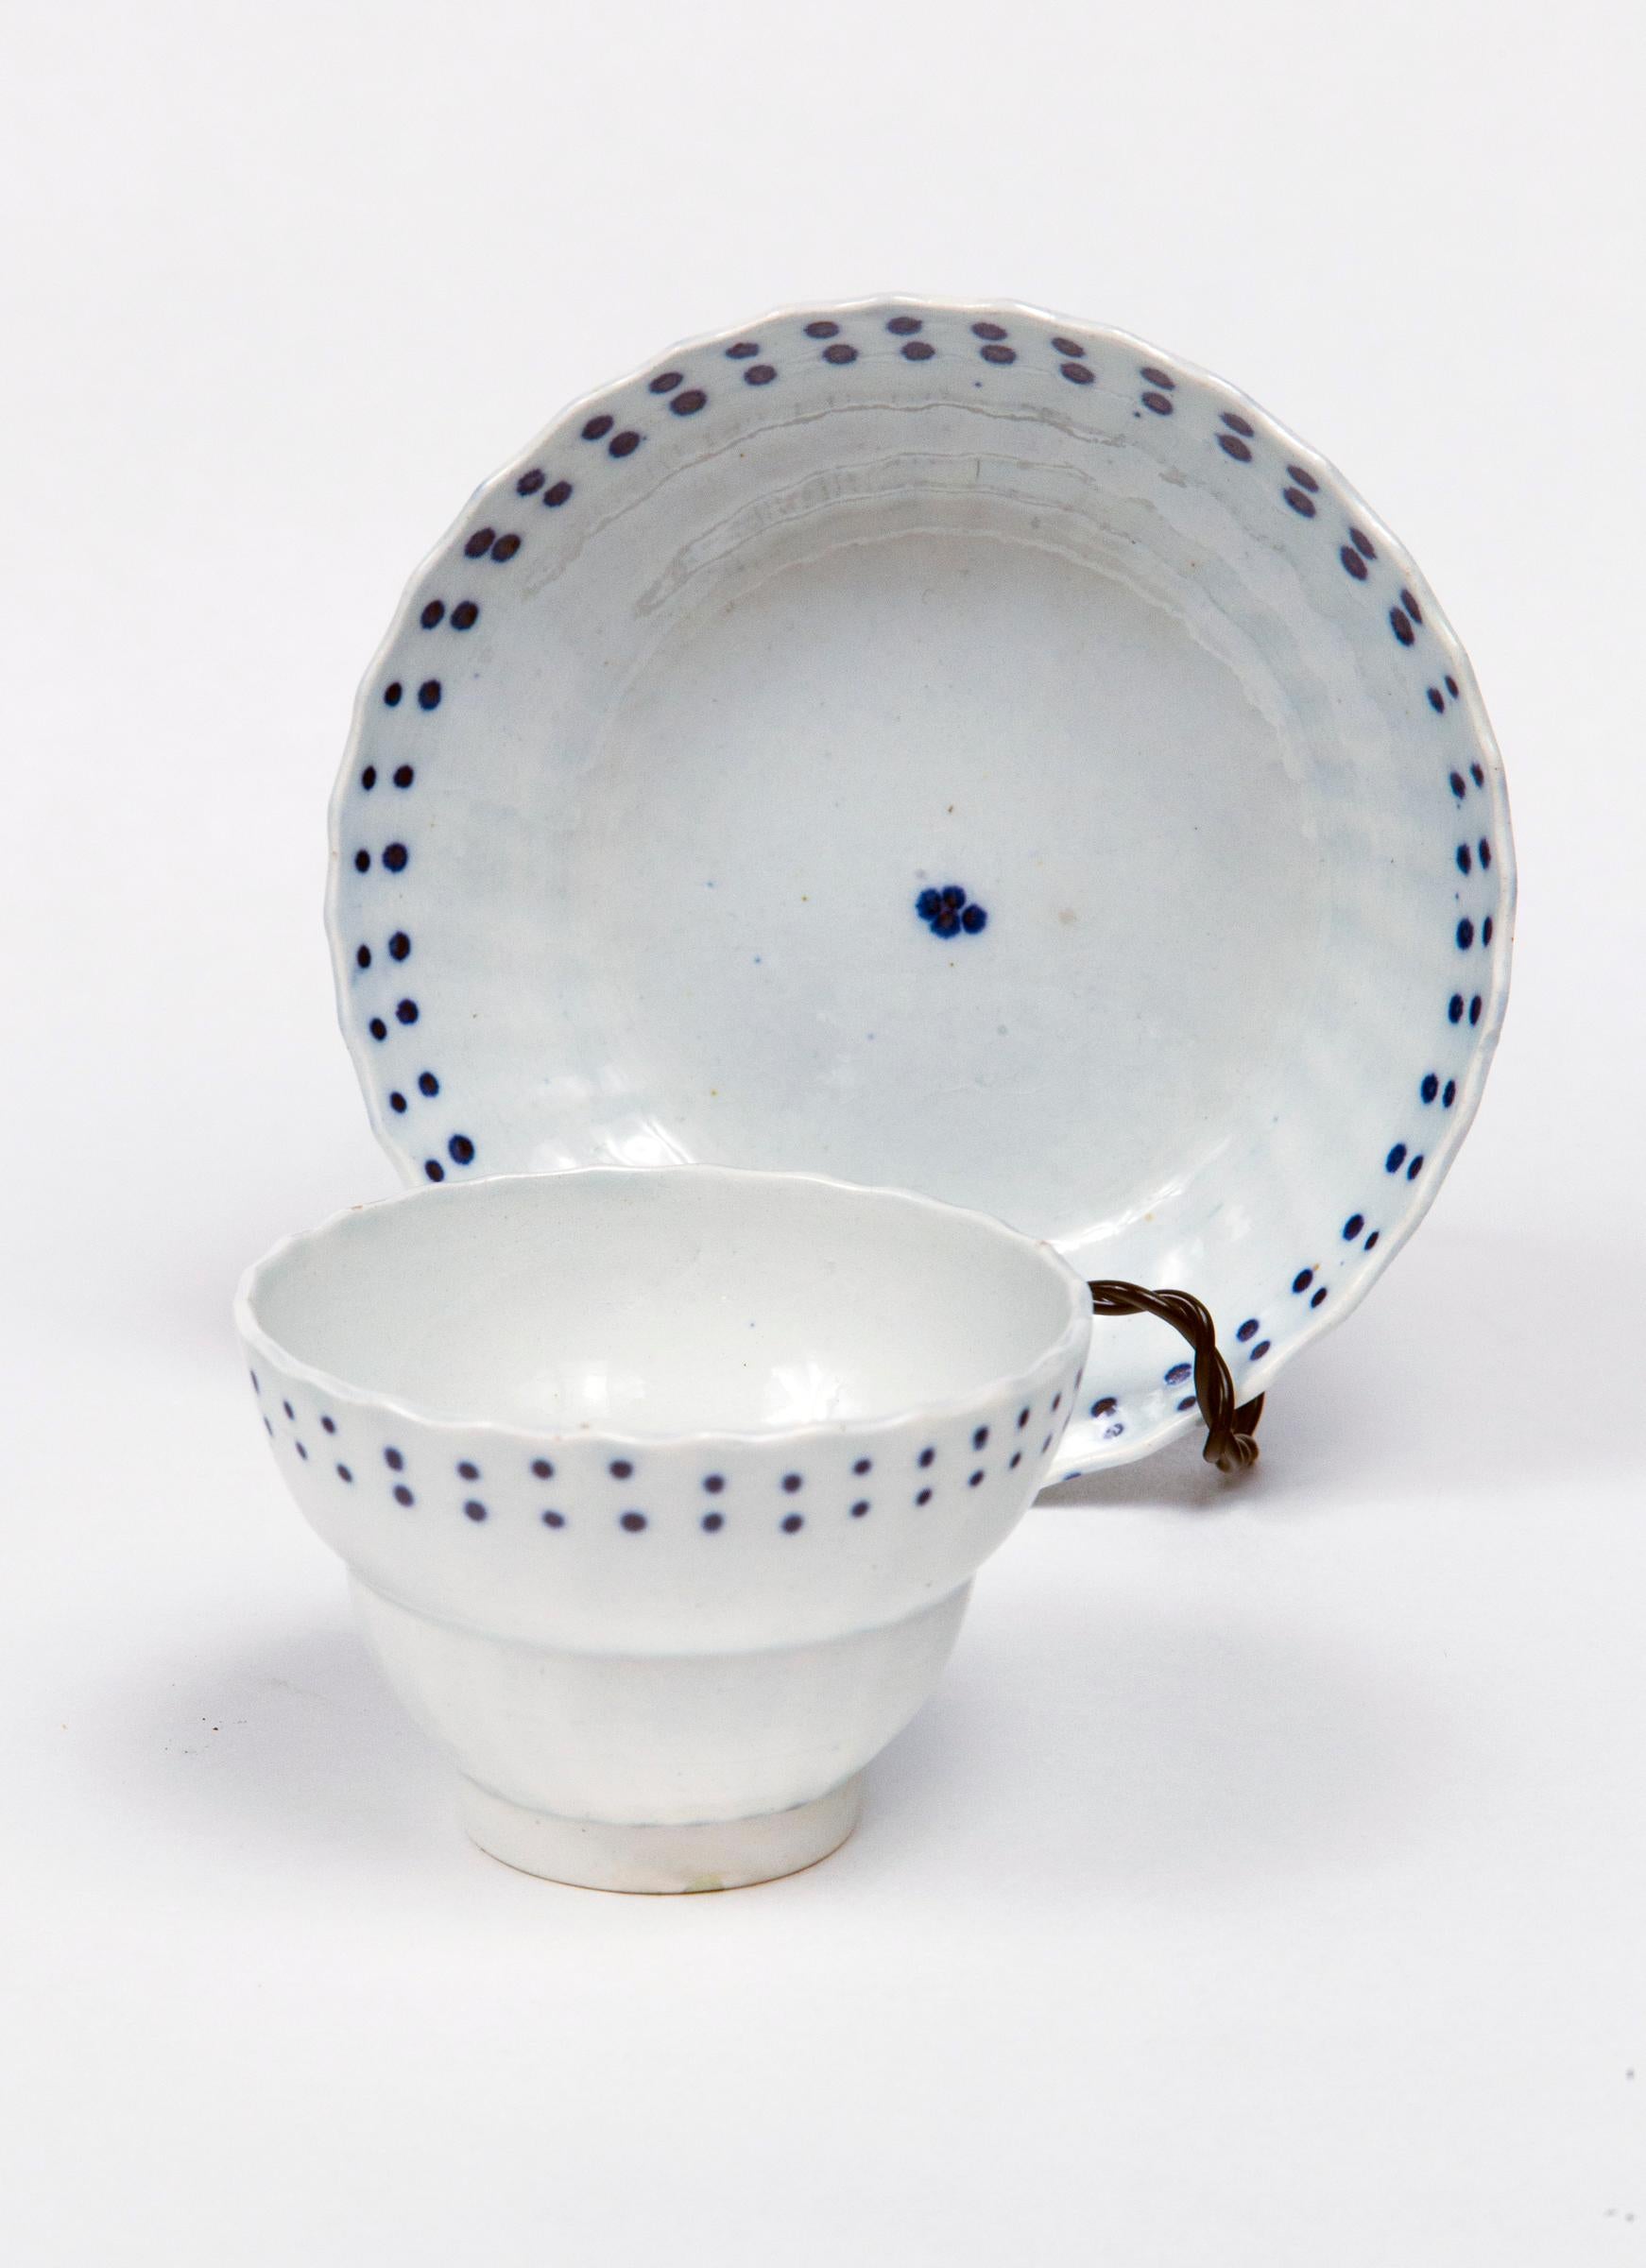 Service à thé anglais en perles, début du 19e siècle. Deux théières avec épis de cygne. Six bols à thé et soucoupes assorties. Porcelaine blanche délicate avec des motifs graphiques en glaçure bleue.